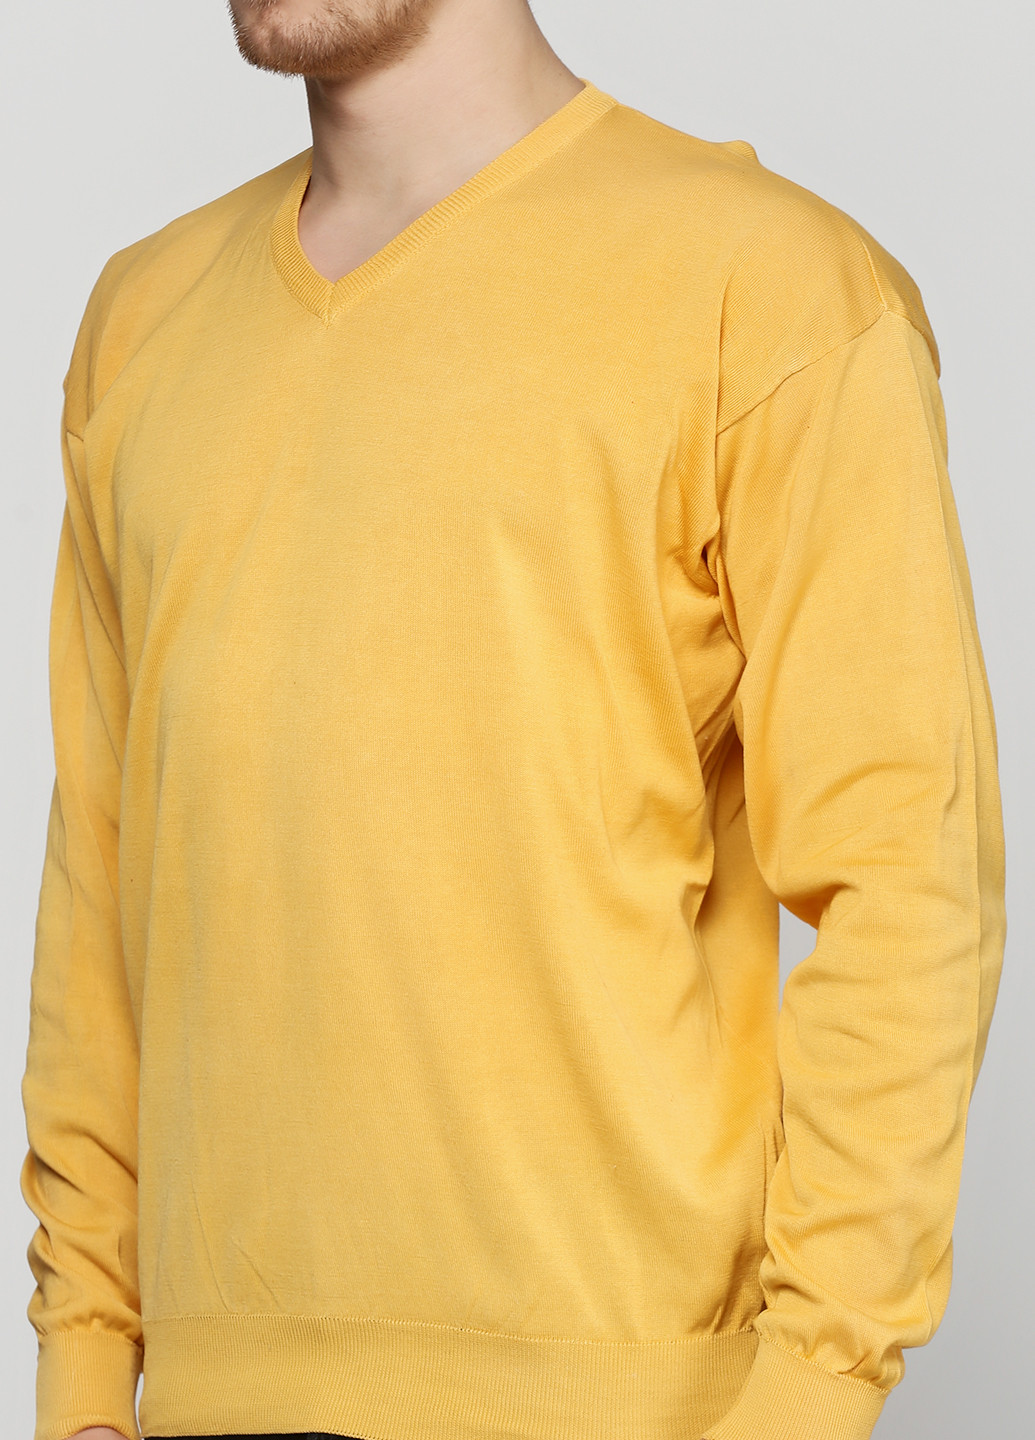 Желтый демисезонный пуловер пуловер Barbieri